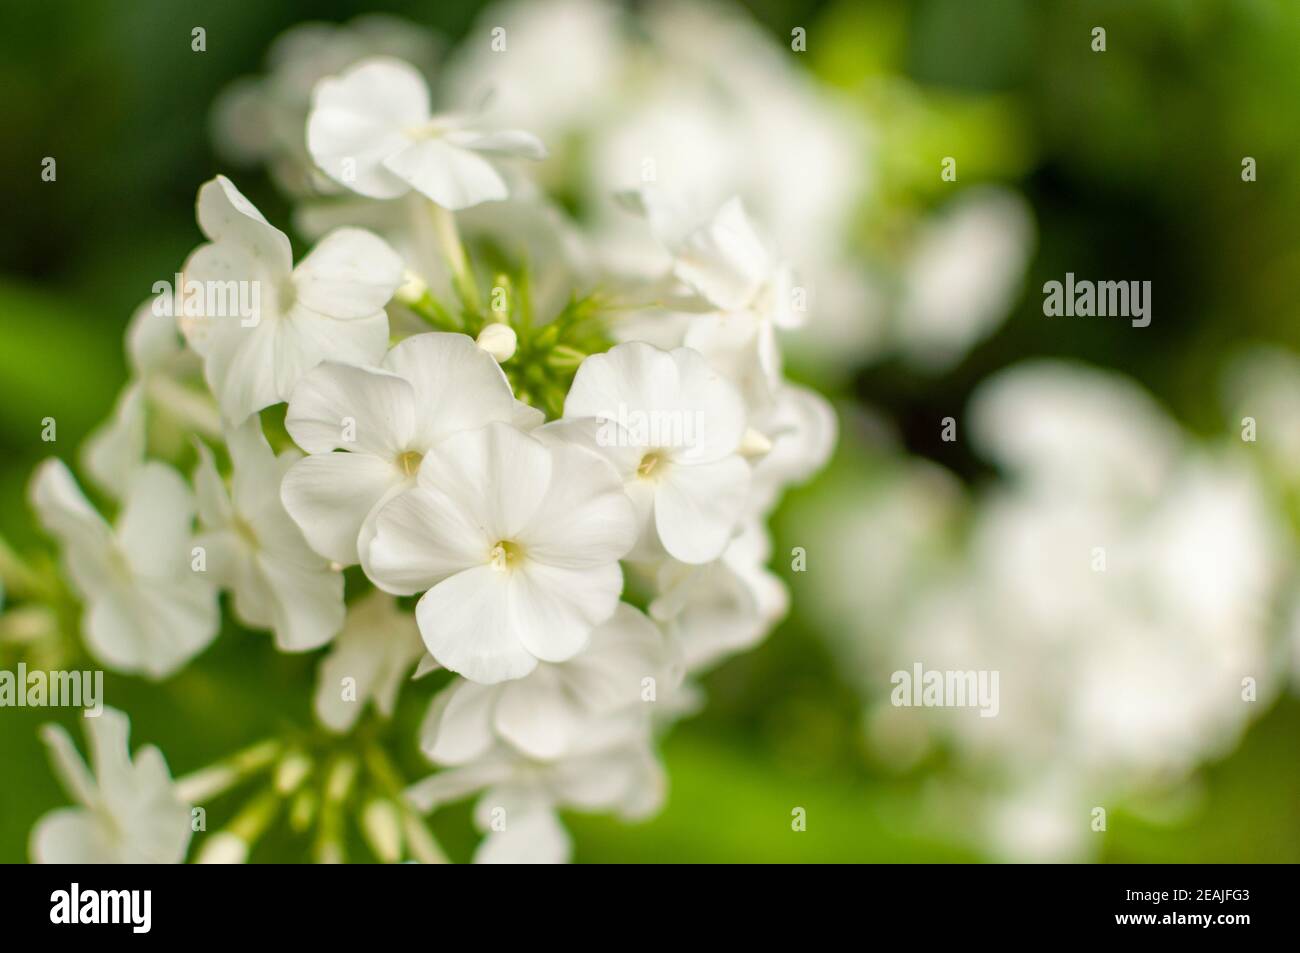 White Garden Phlox flower. Stock Photo